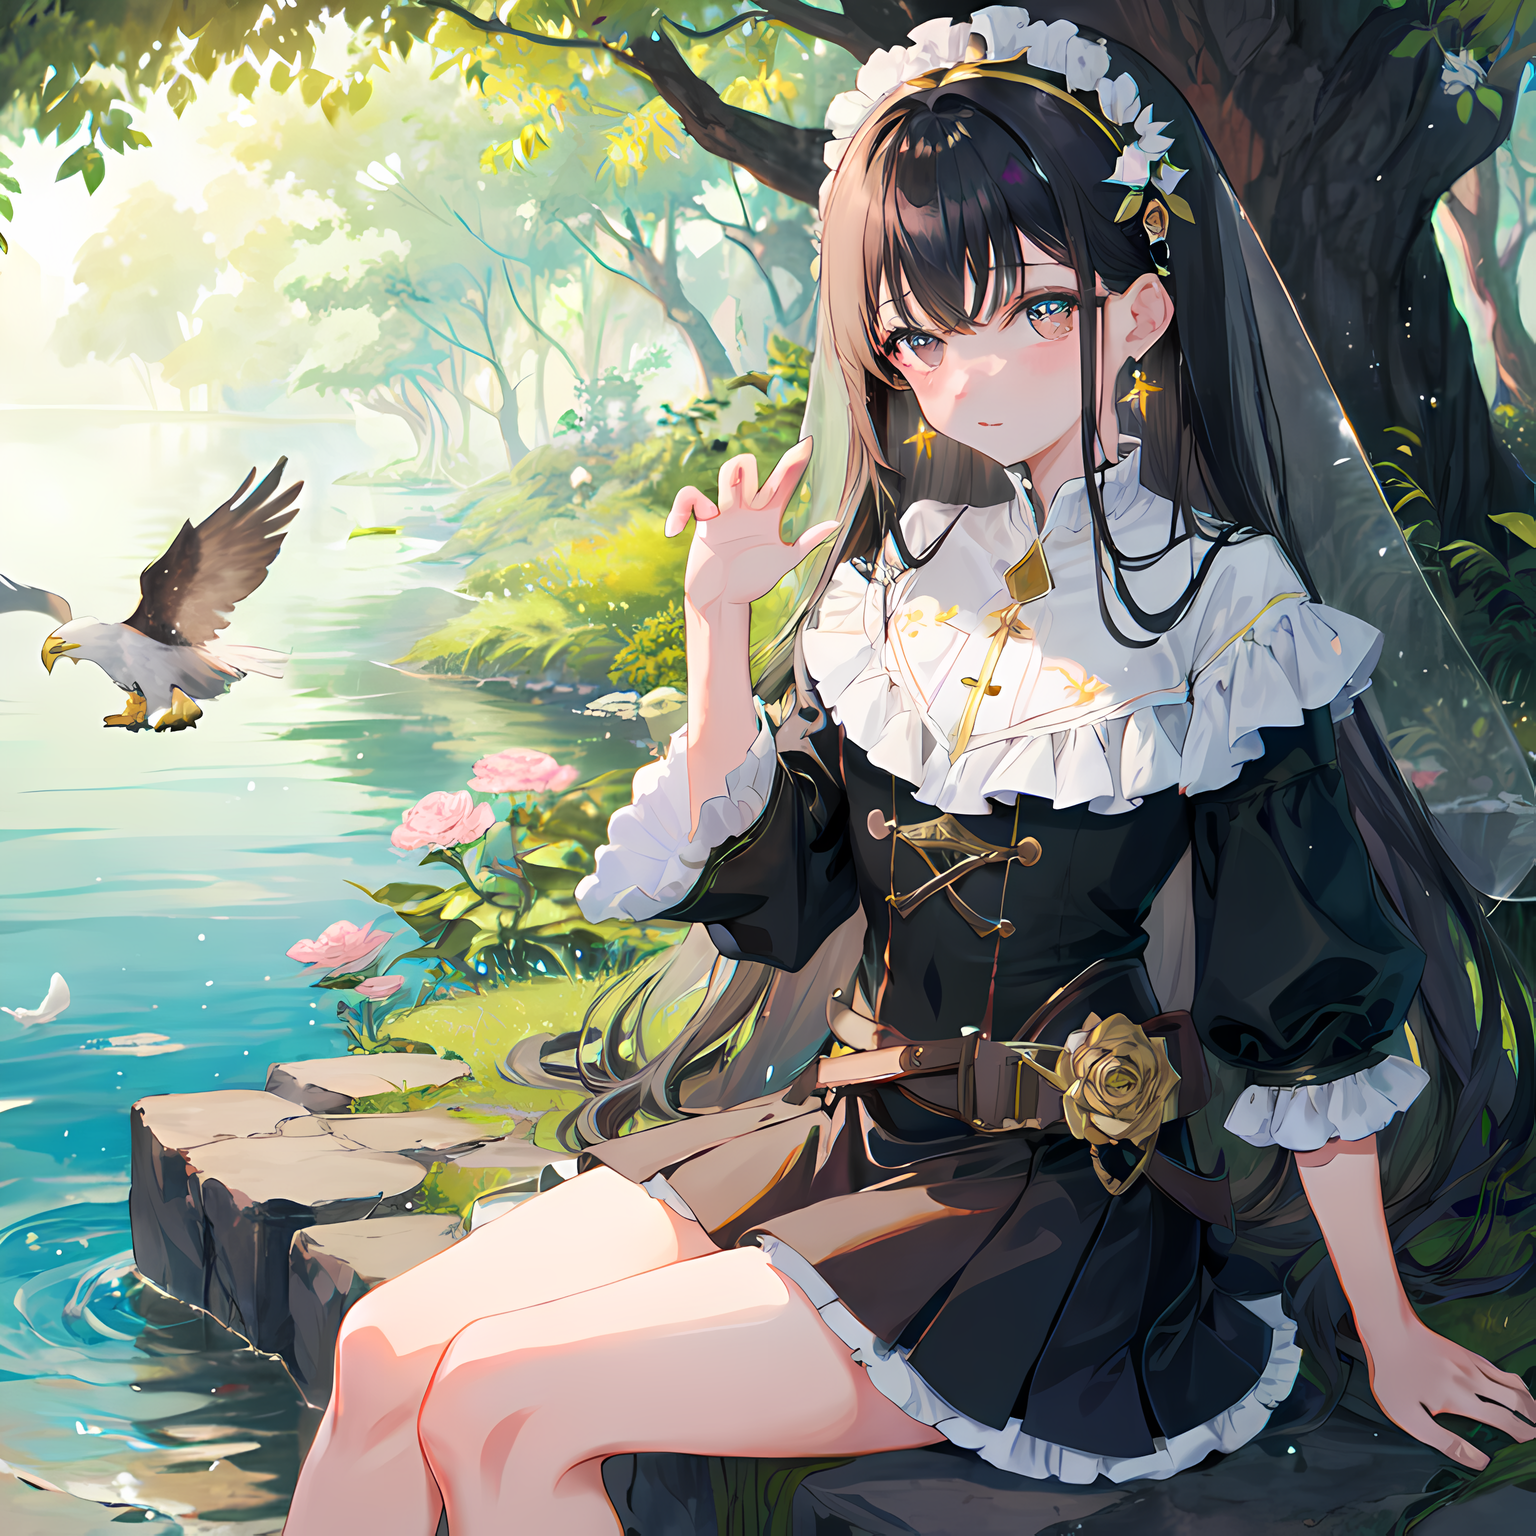 长发少女在野外湖边闲坐，玩弄小鸟，边享受大自然，伴着瀑布潺潺声。